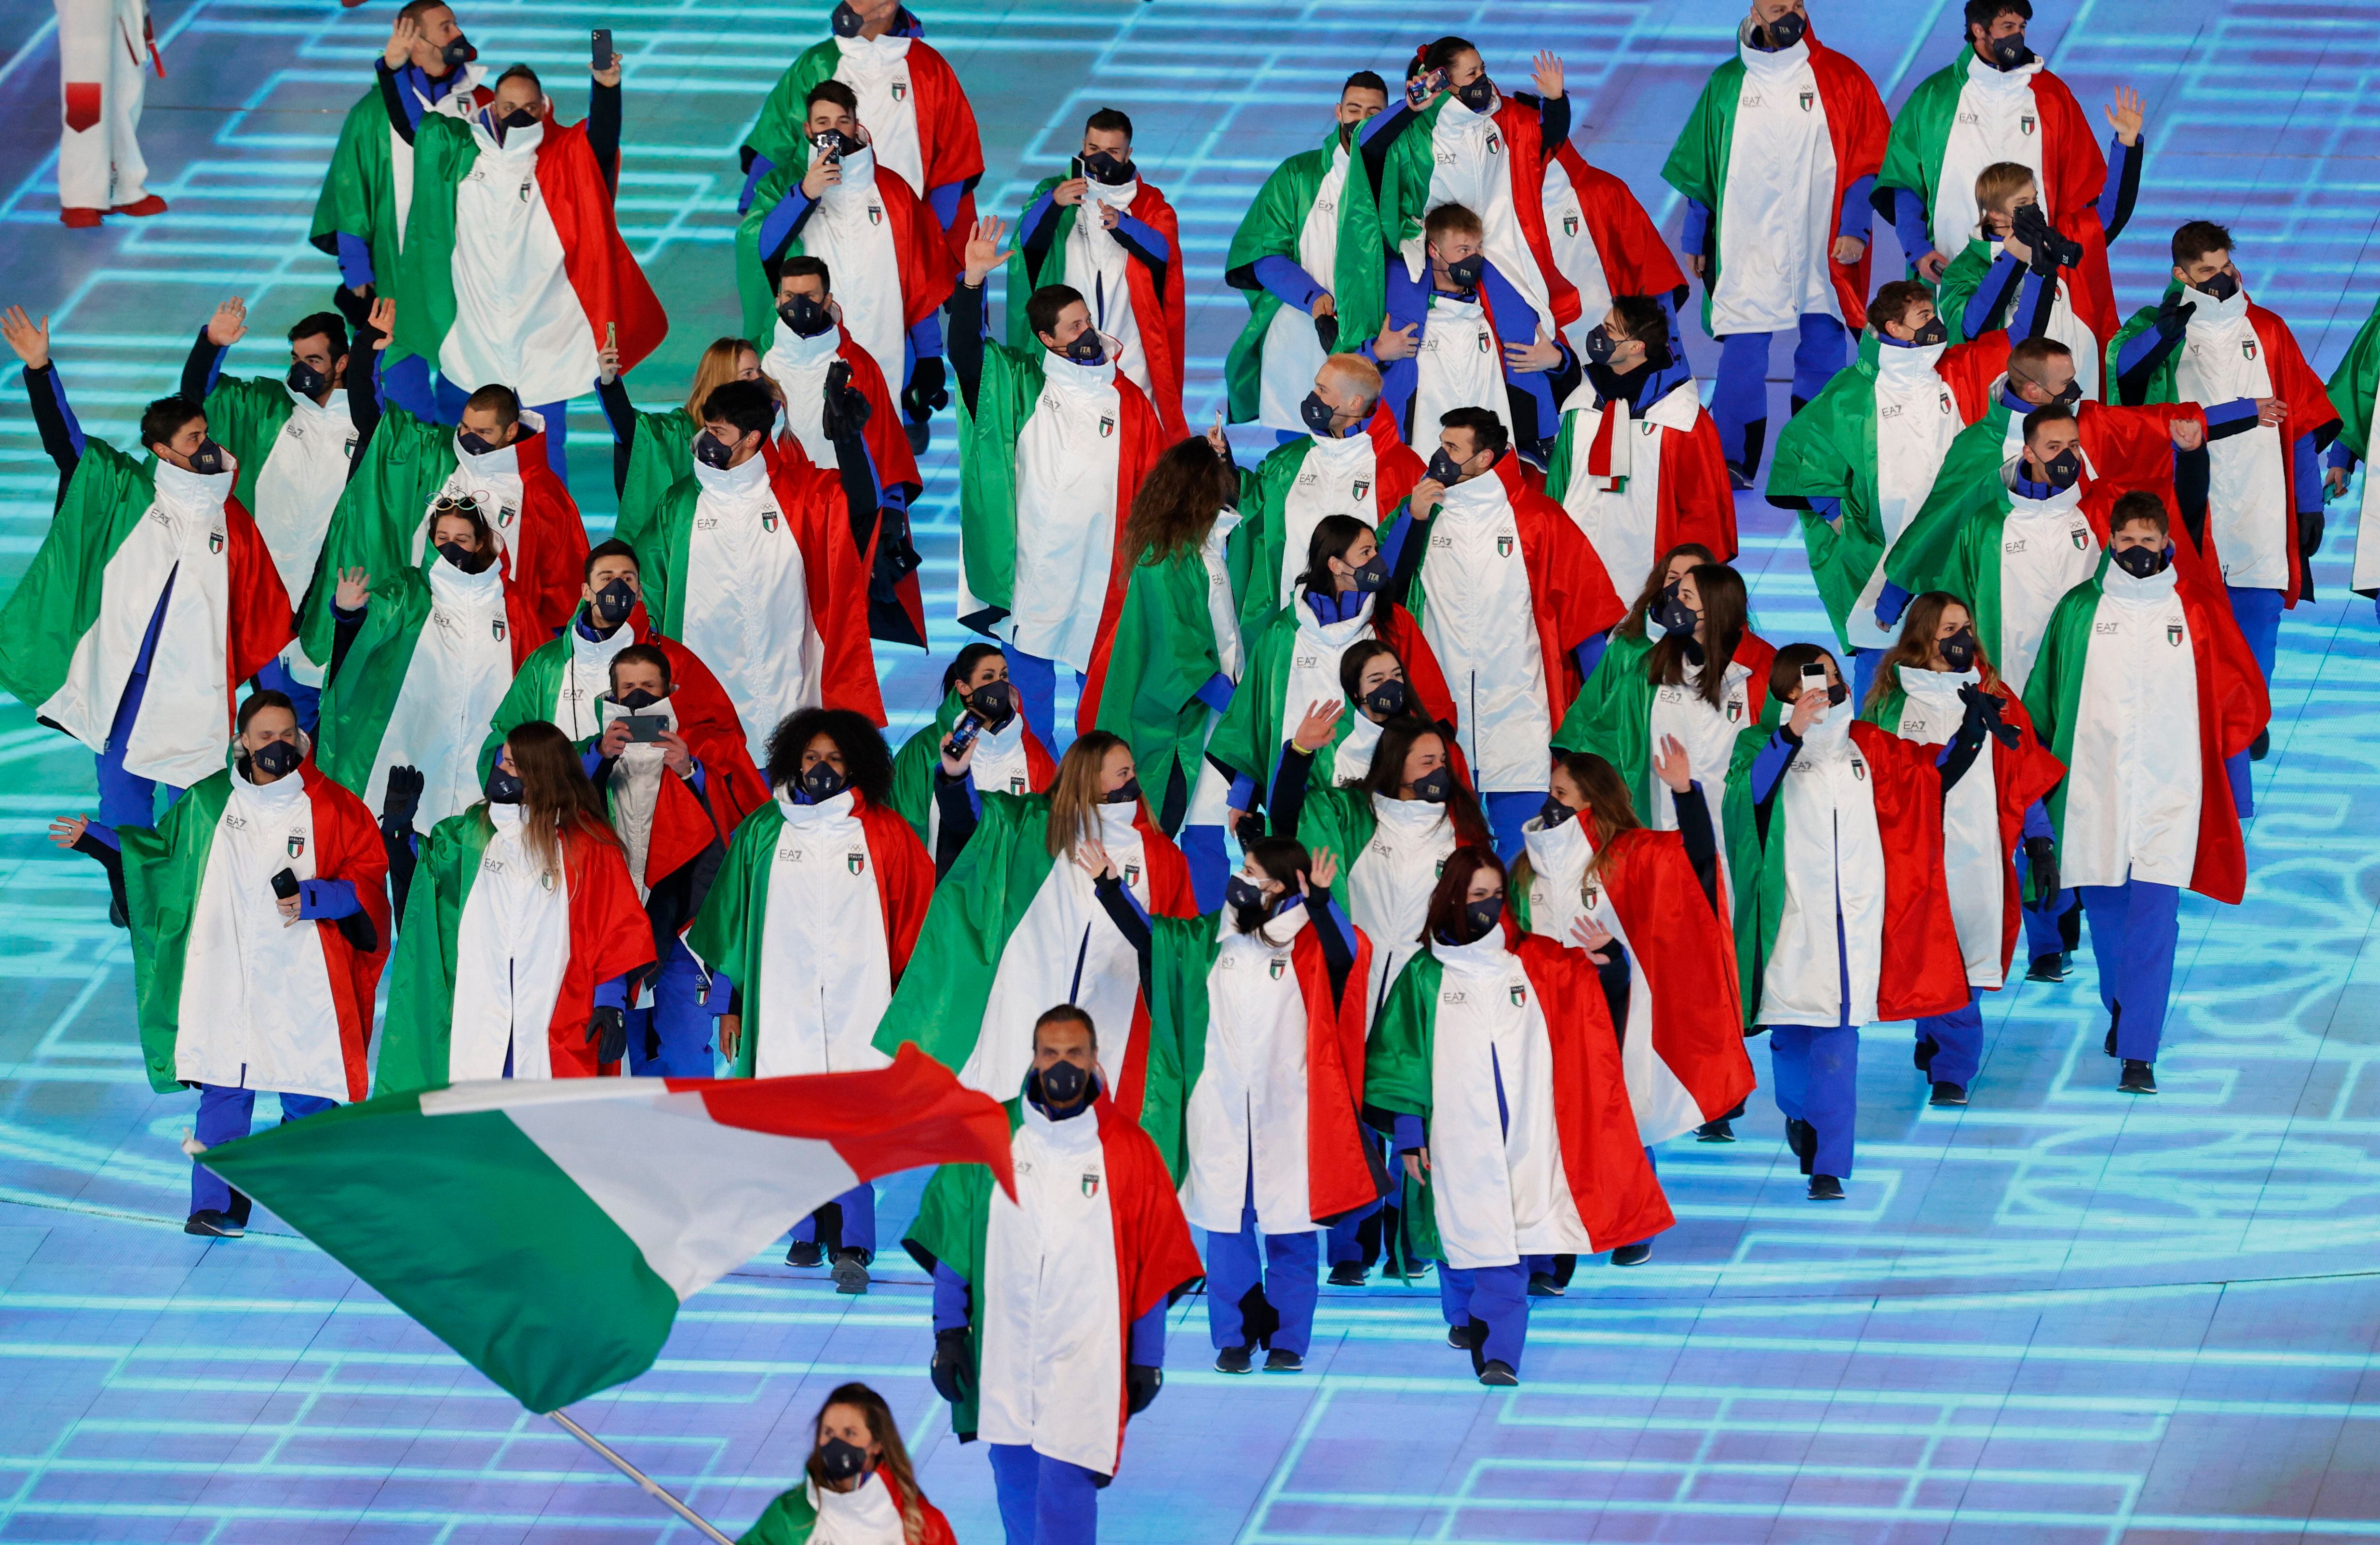 La bandera italiana fue portada por Michela Moioli durante la ceremonia inaugural de los JJOO de invierno.